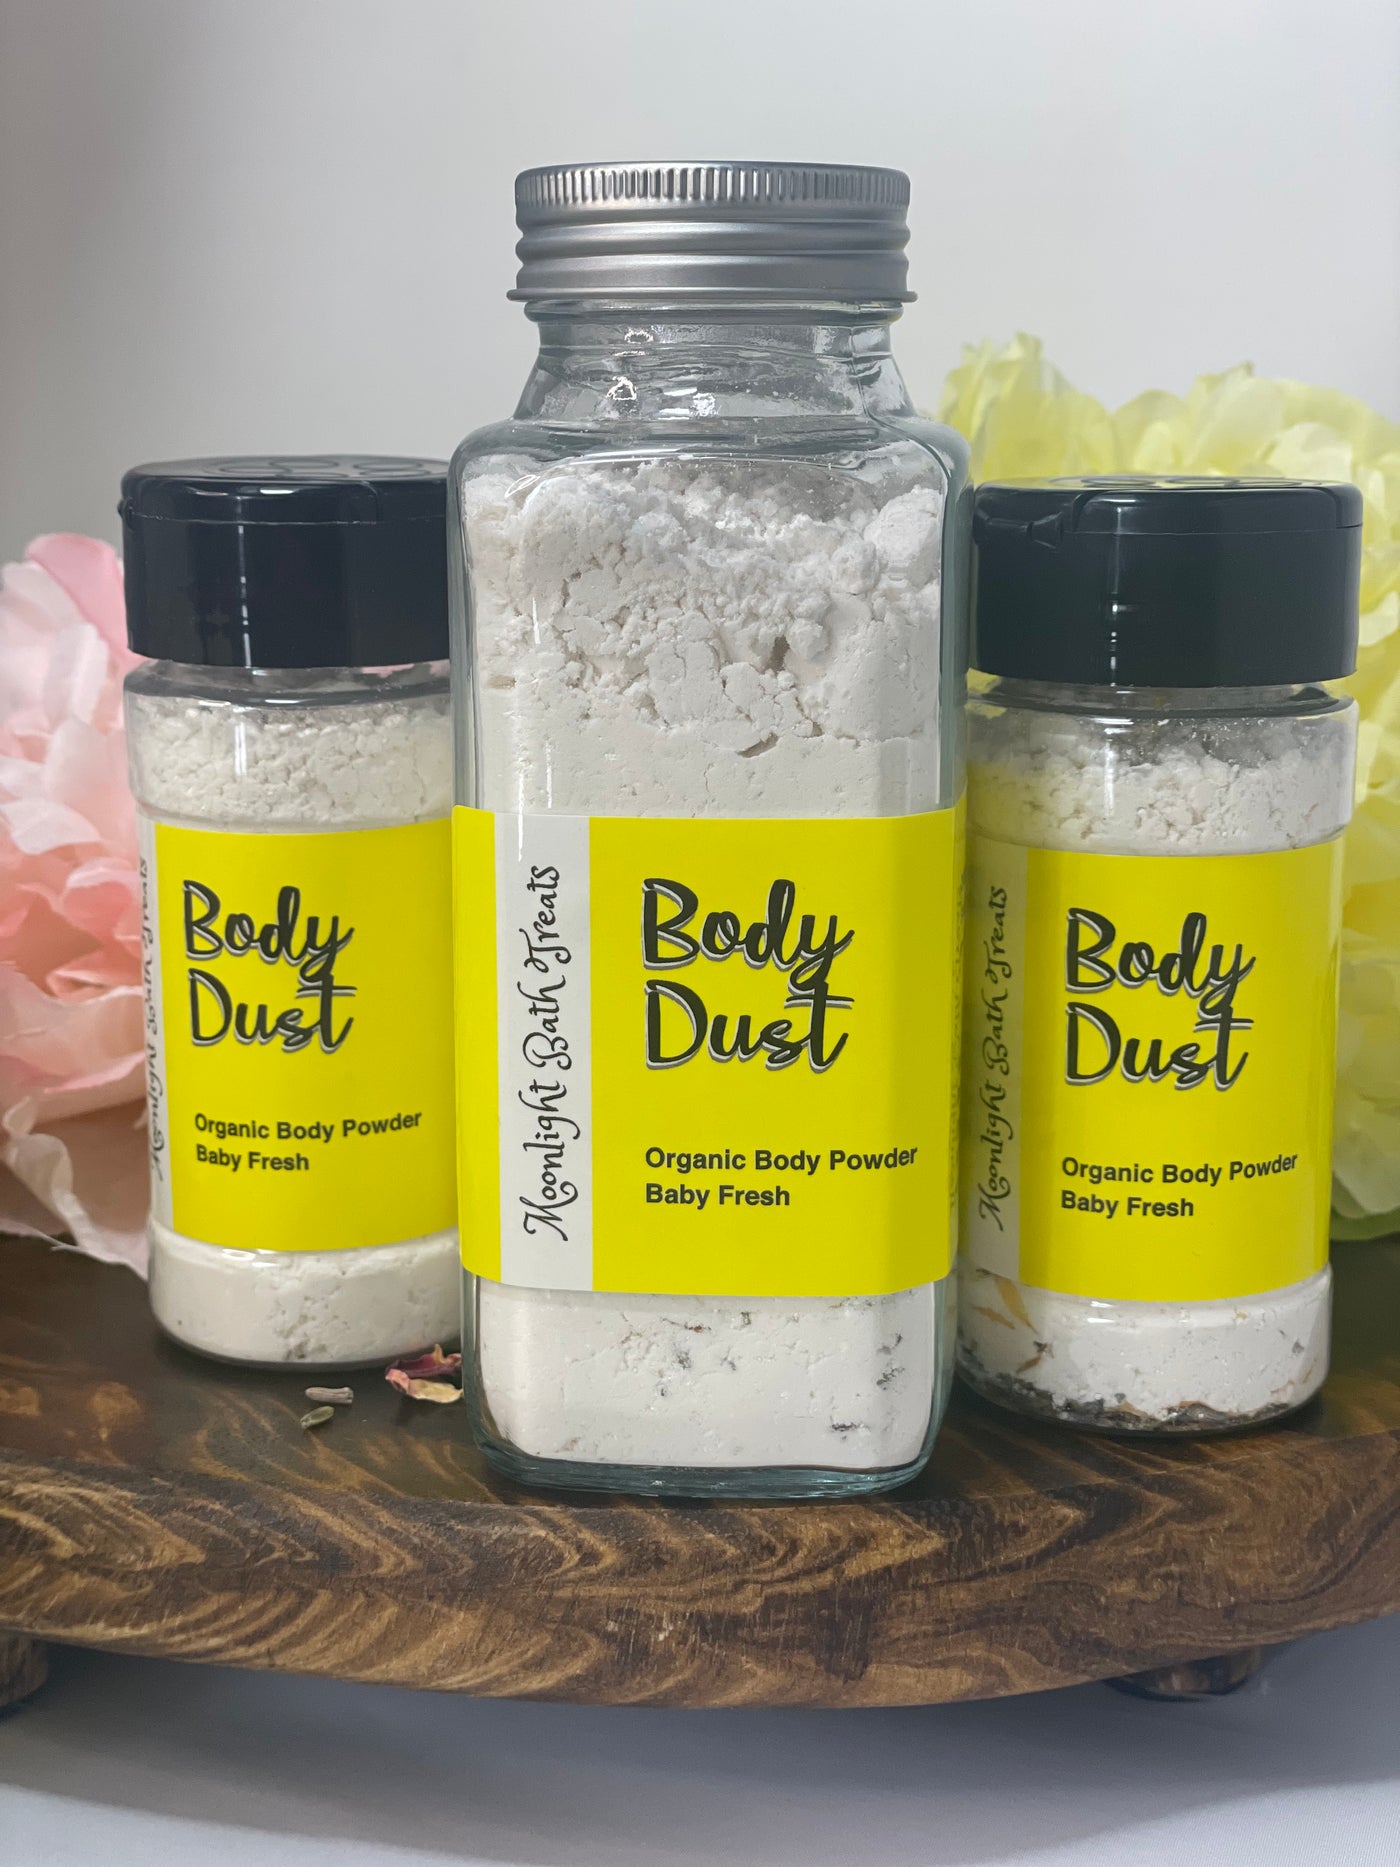 Body Dust, Body Powder